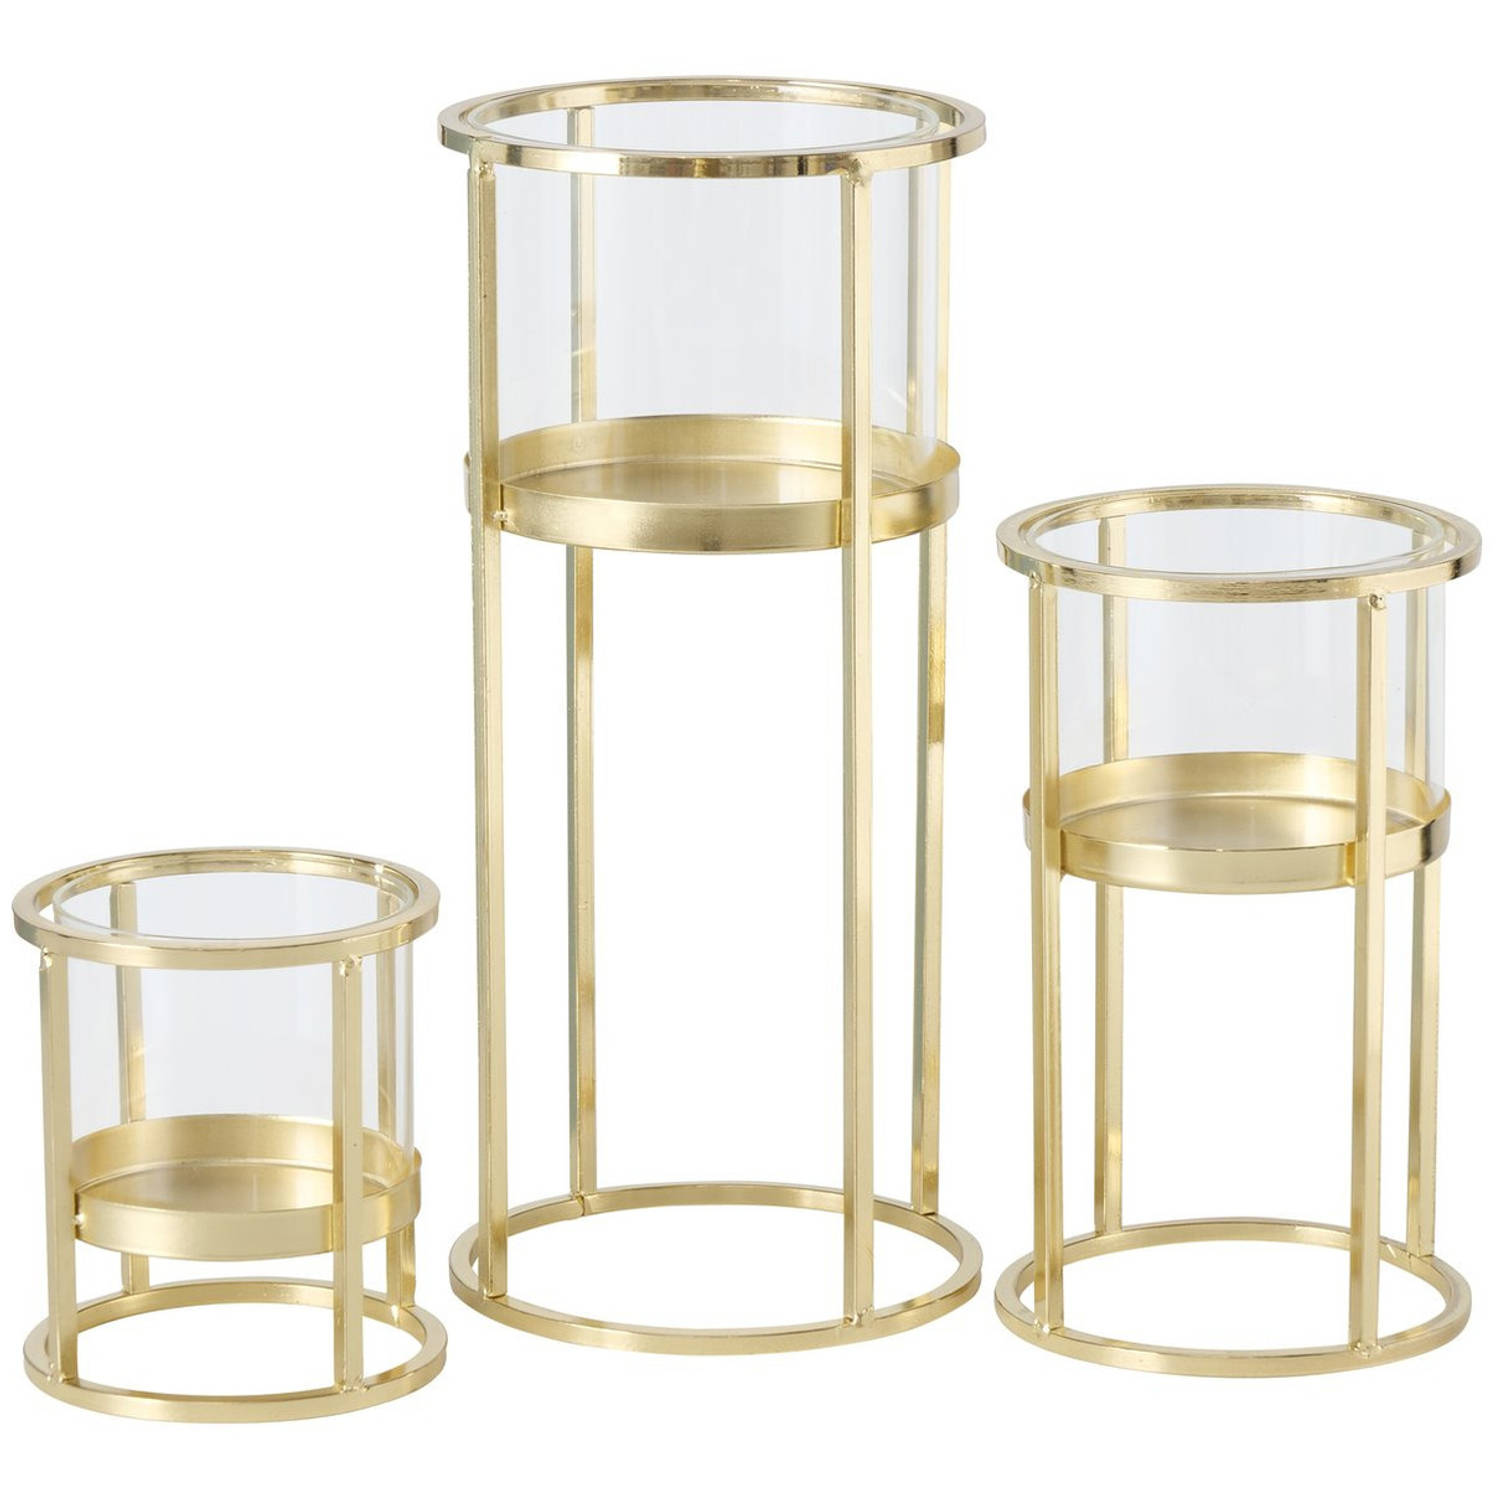 Metalen design kaarsenhouder champagne goud set van 3x stuks - Waxinelichtjeshouders